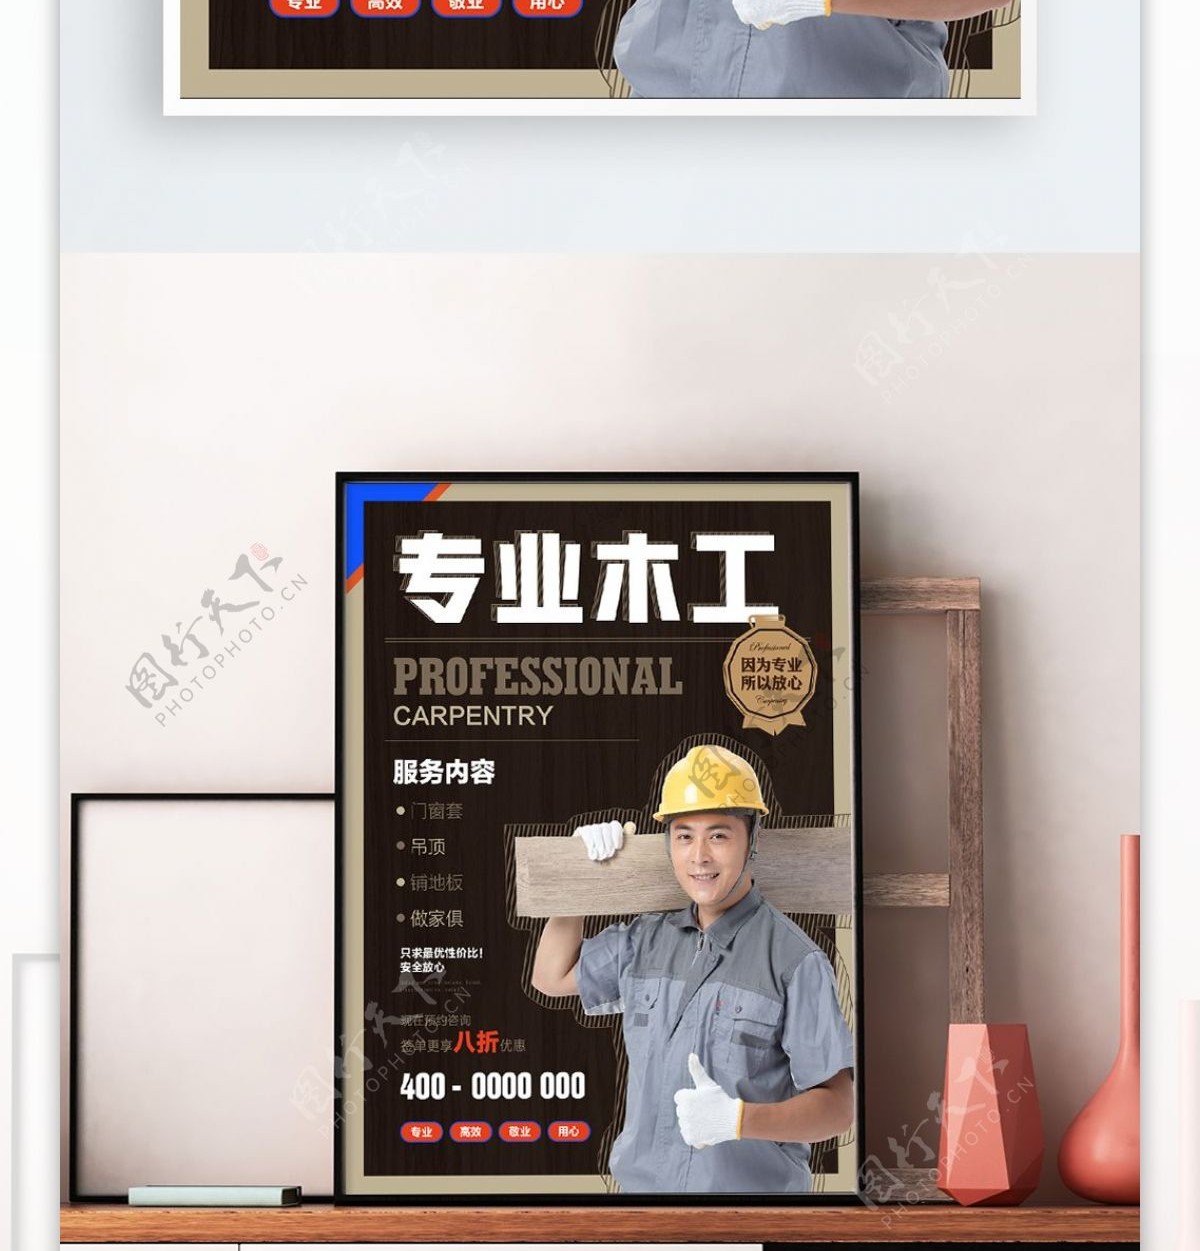 简约风专业木工商业服务海报